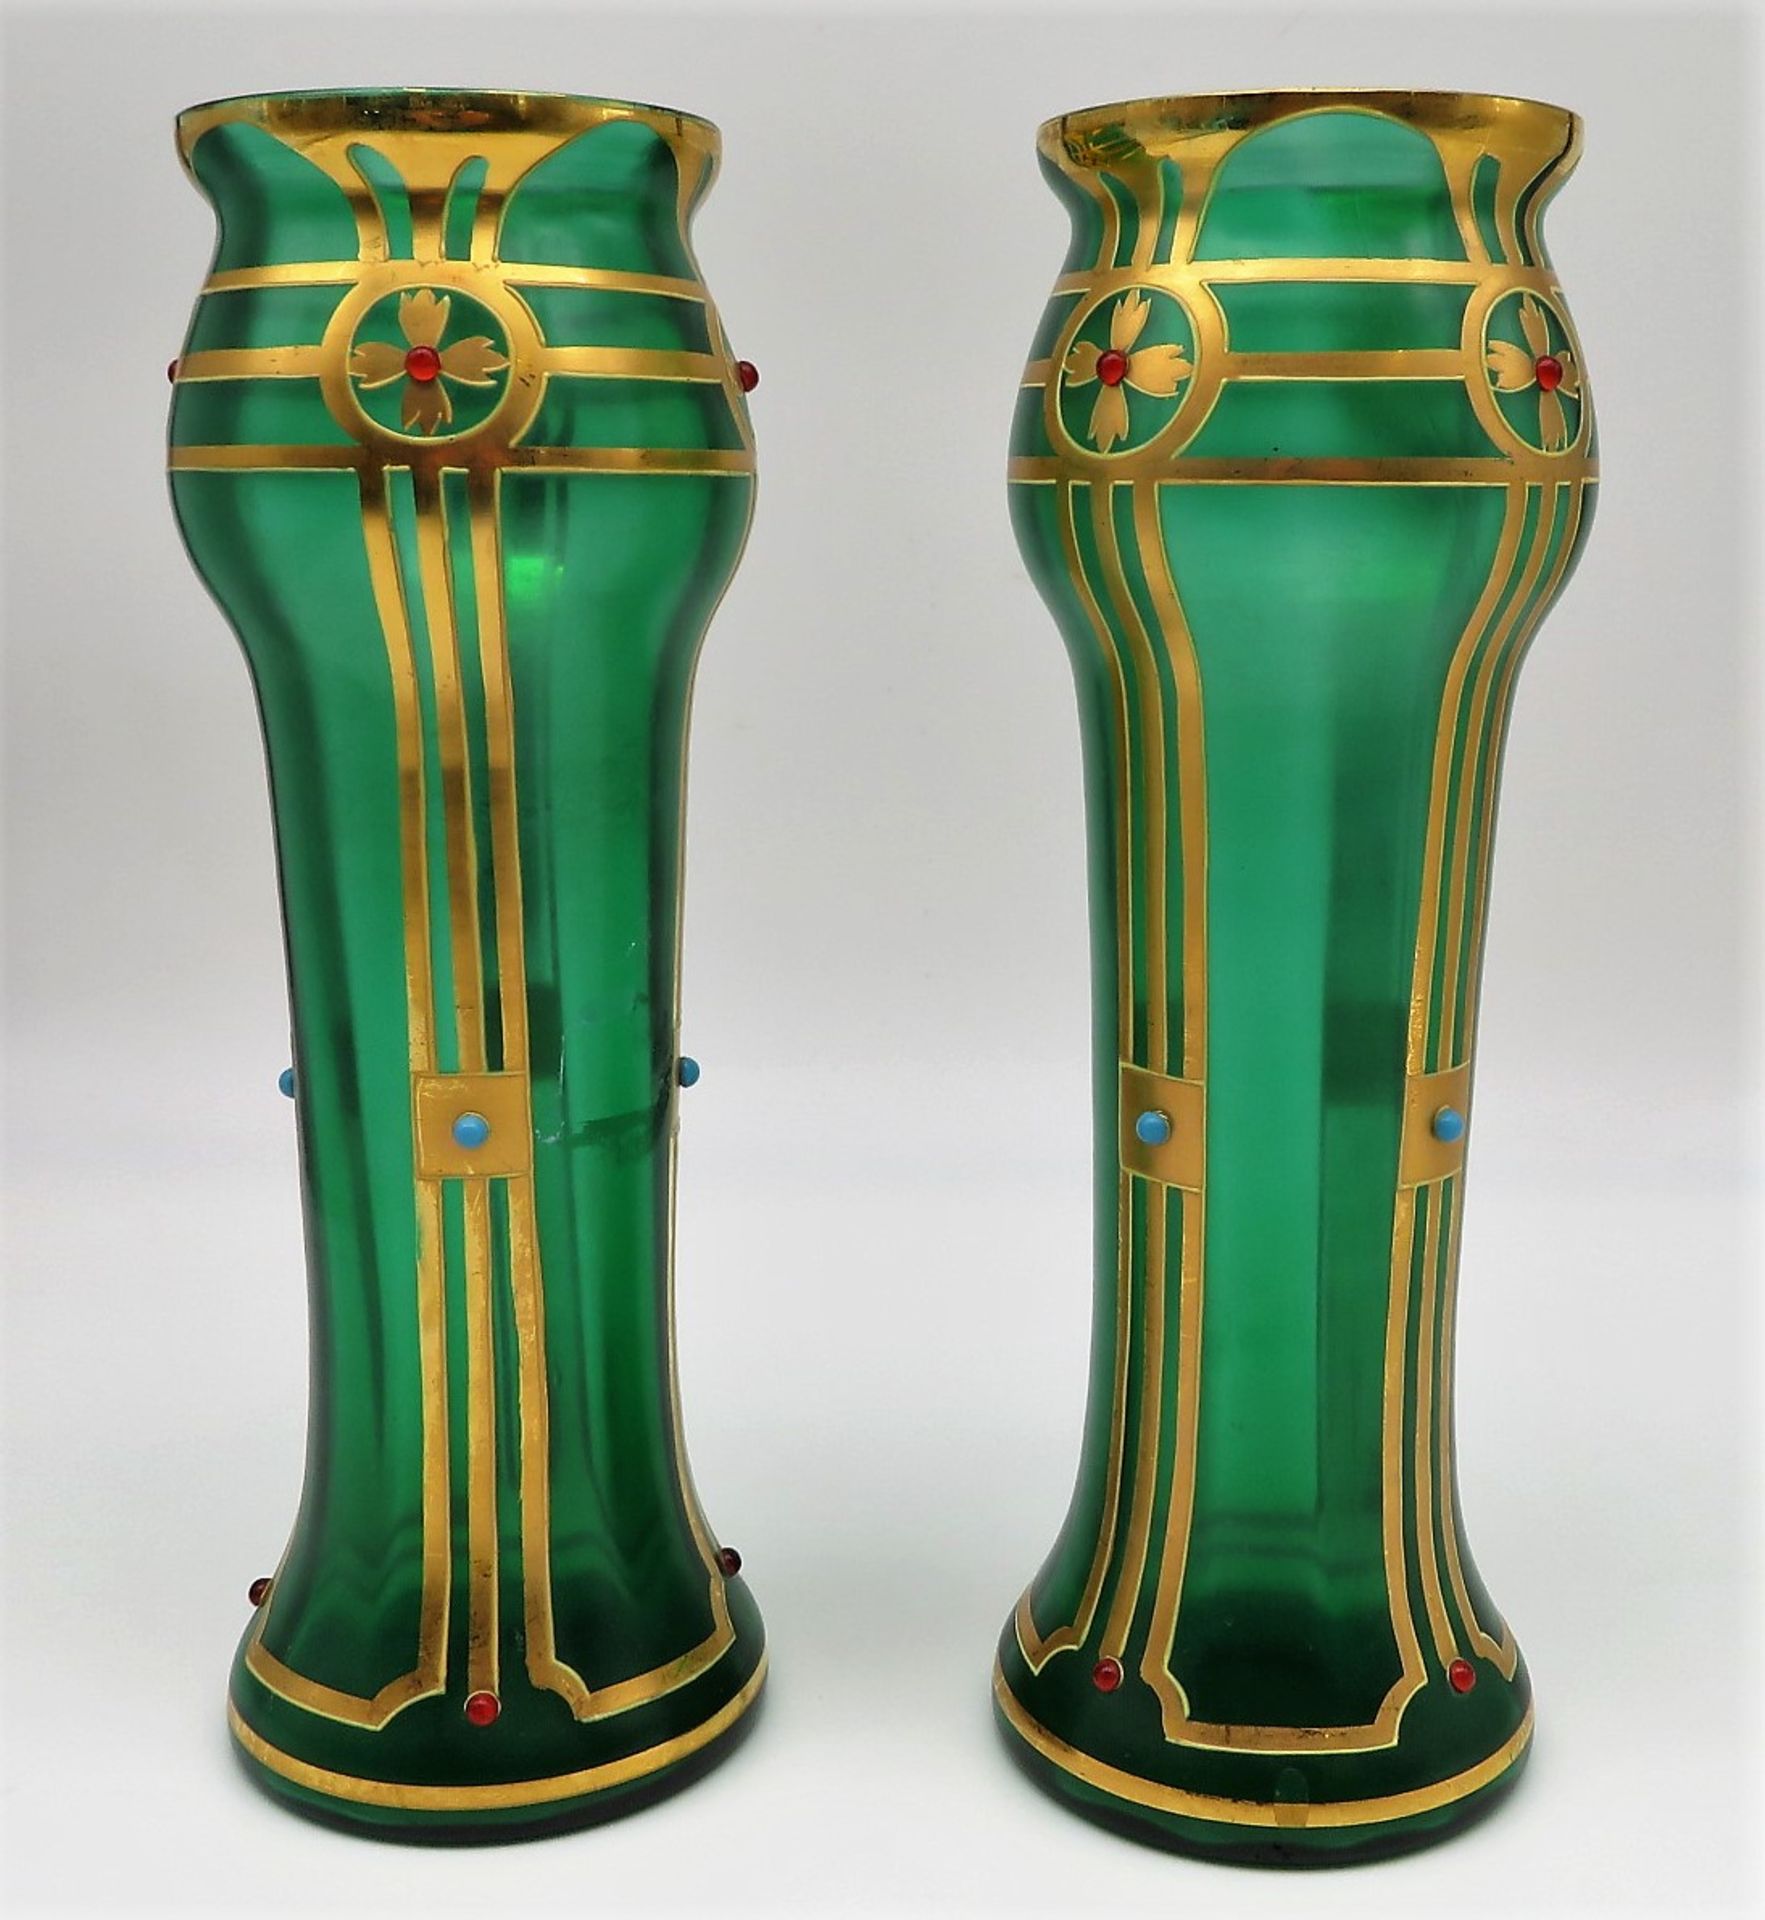 2 Vasen, Jugendstil, um 1900, grünes glas mit feiner Goldmalerei und aufgesetzten Glasperlen, h 27, - Image 2 of 2